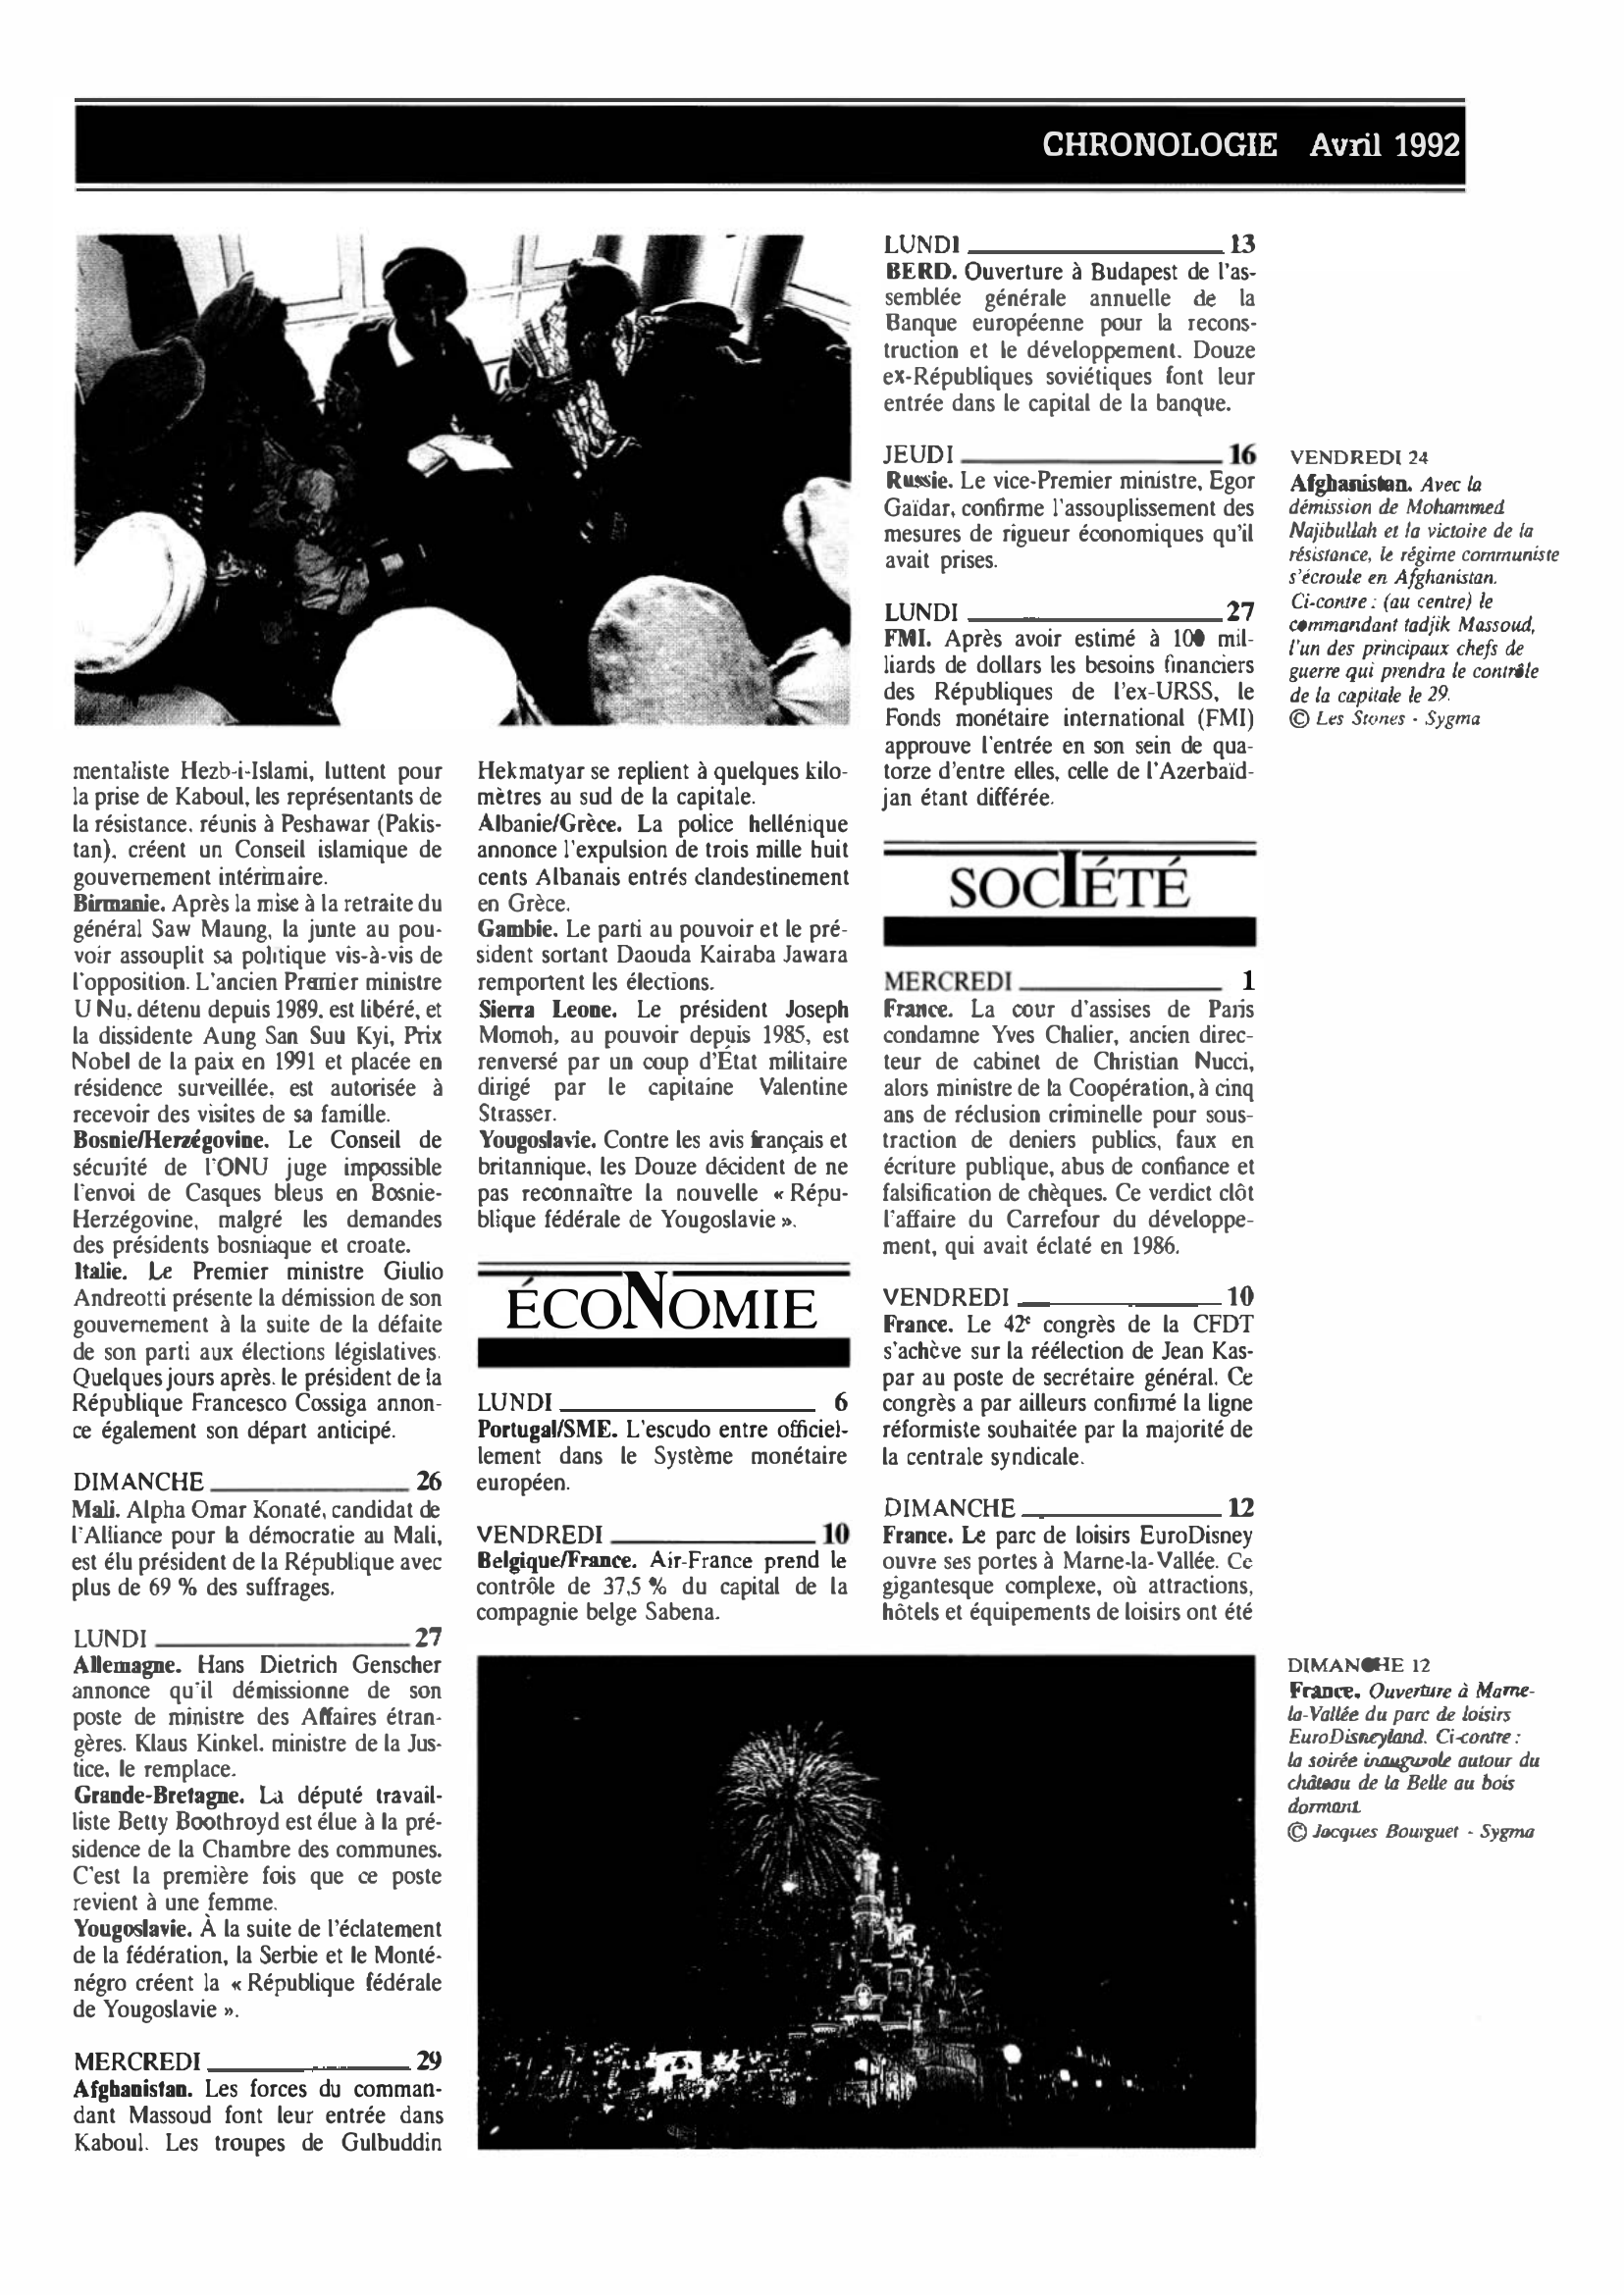 Prévisualisation du document CHRONOLOGIE Avril 1992 dans le monde (histoire chronologique)